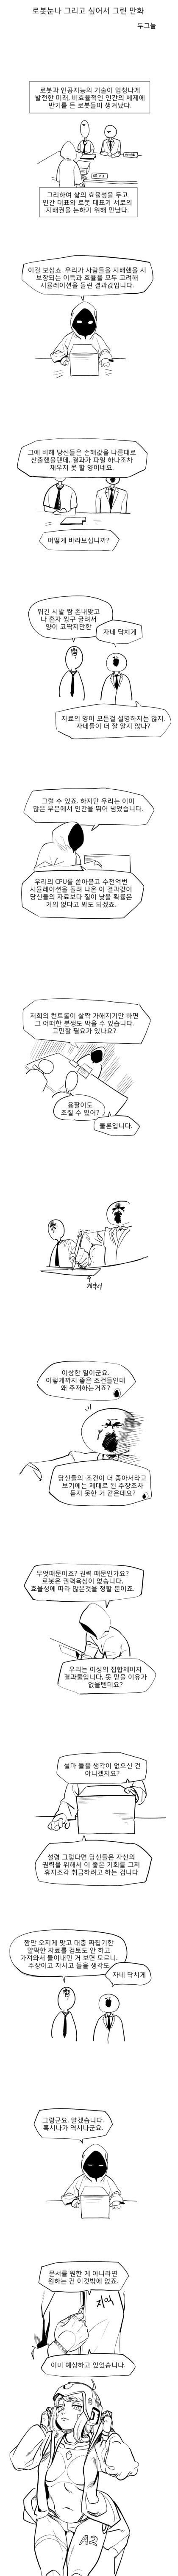 인간 대표와 로봇 대표가 지배권 논하는 만화.manhwa